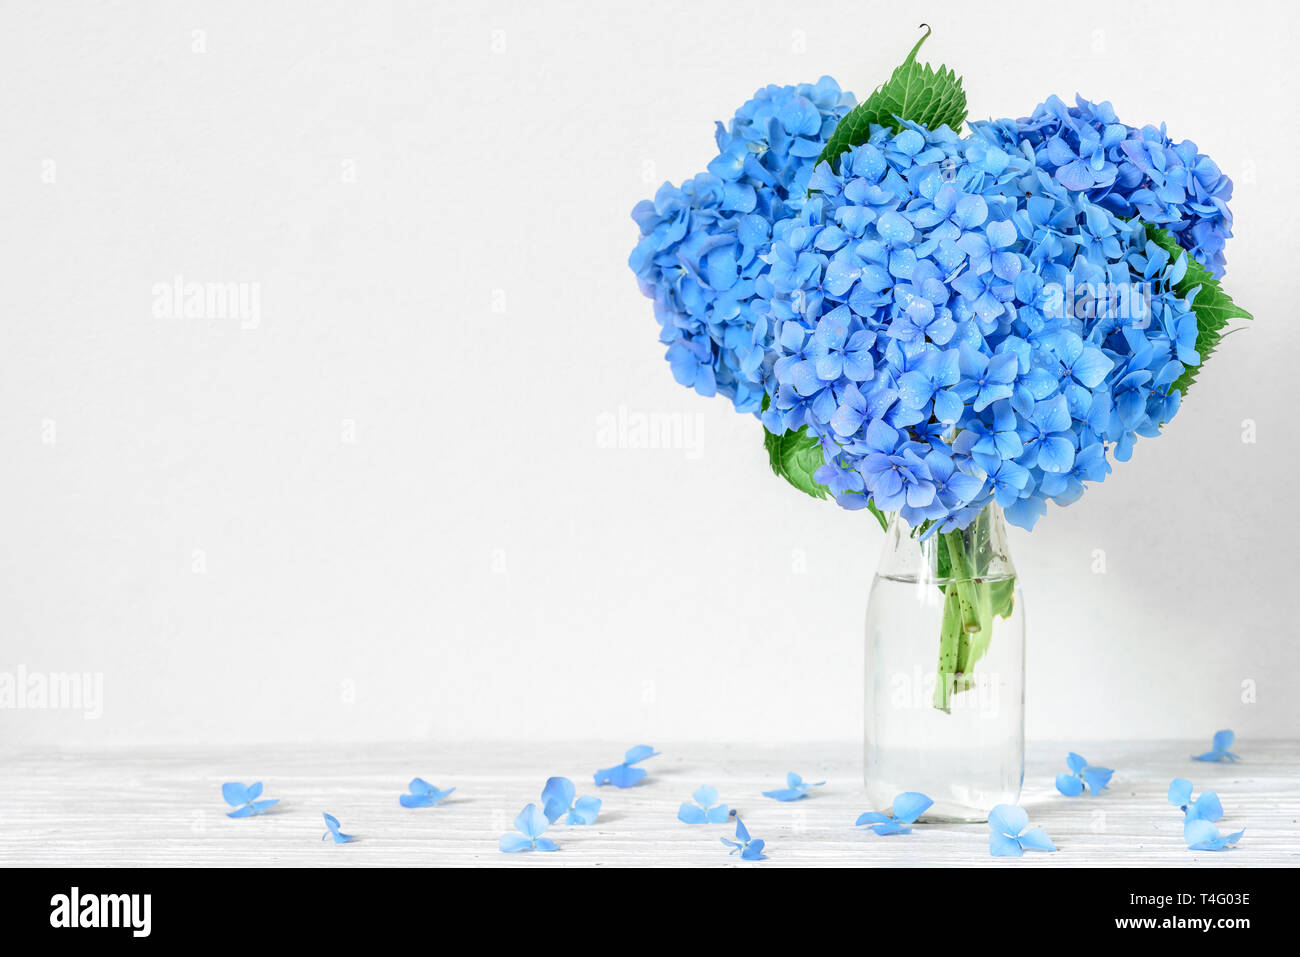 Noch immer leben mit einem schönen Blumenstrauß Blaue Hortensie Blumen mit Wassertropfen. Urlaub oder Hochzeit Hintergrund. Grußkarte Stockfoto